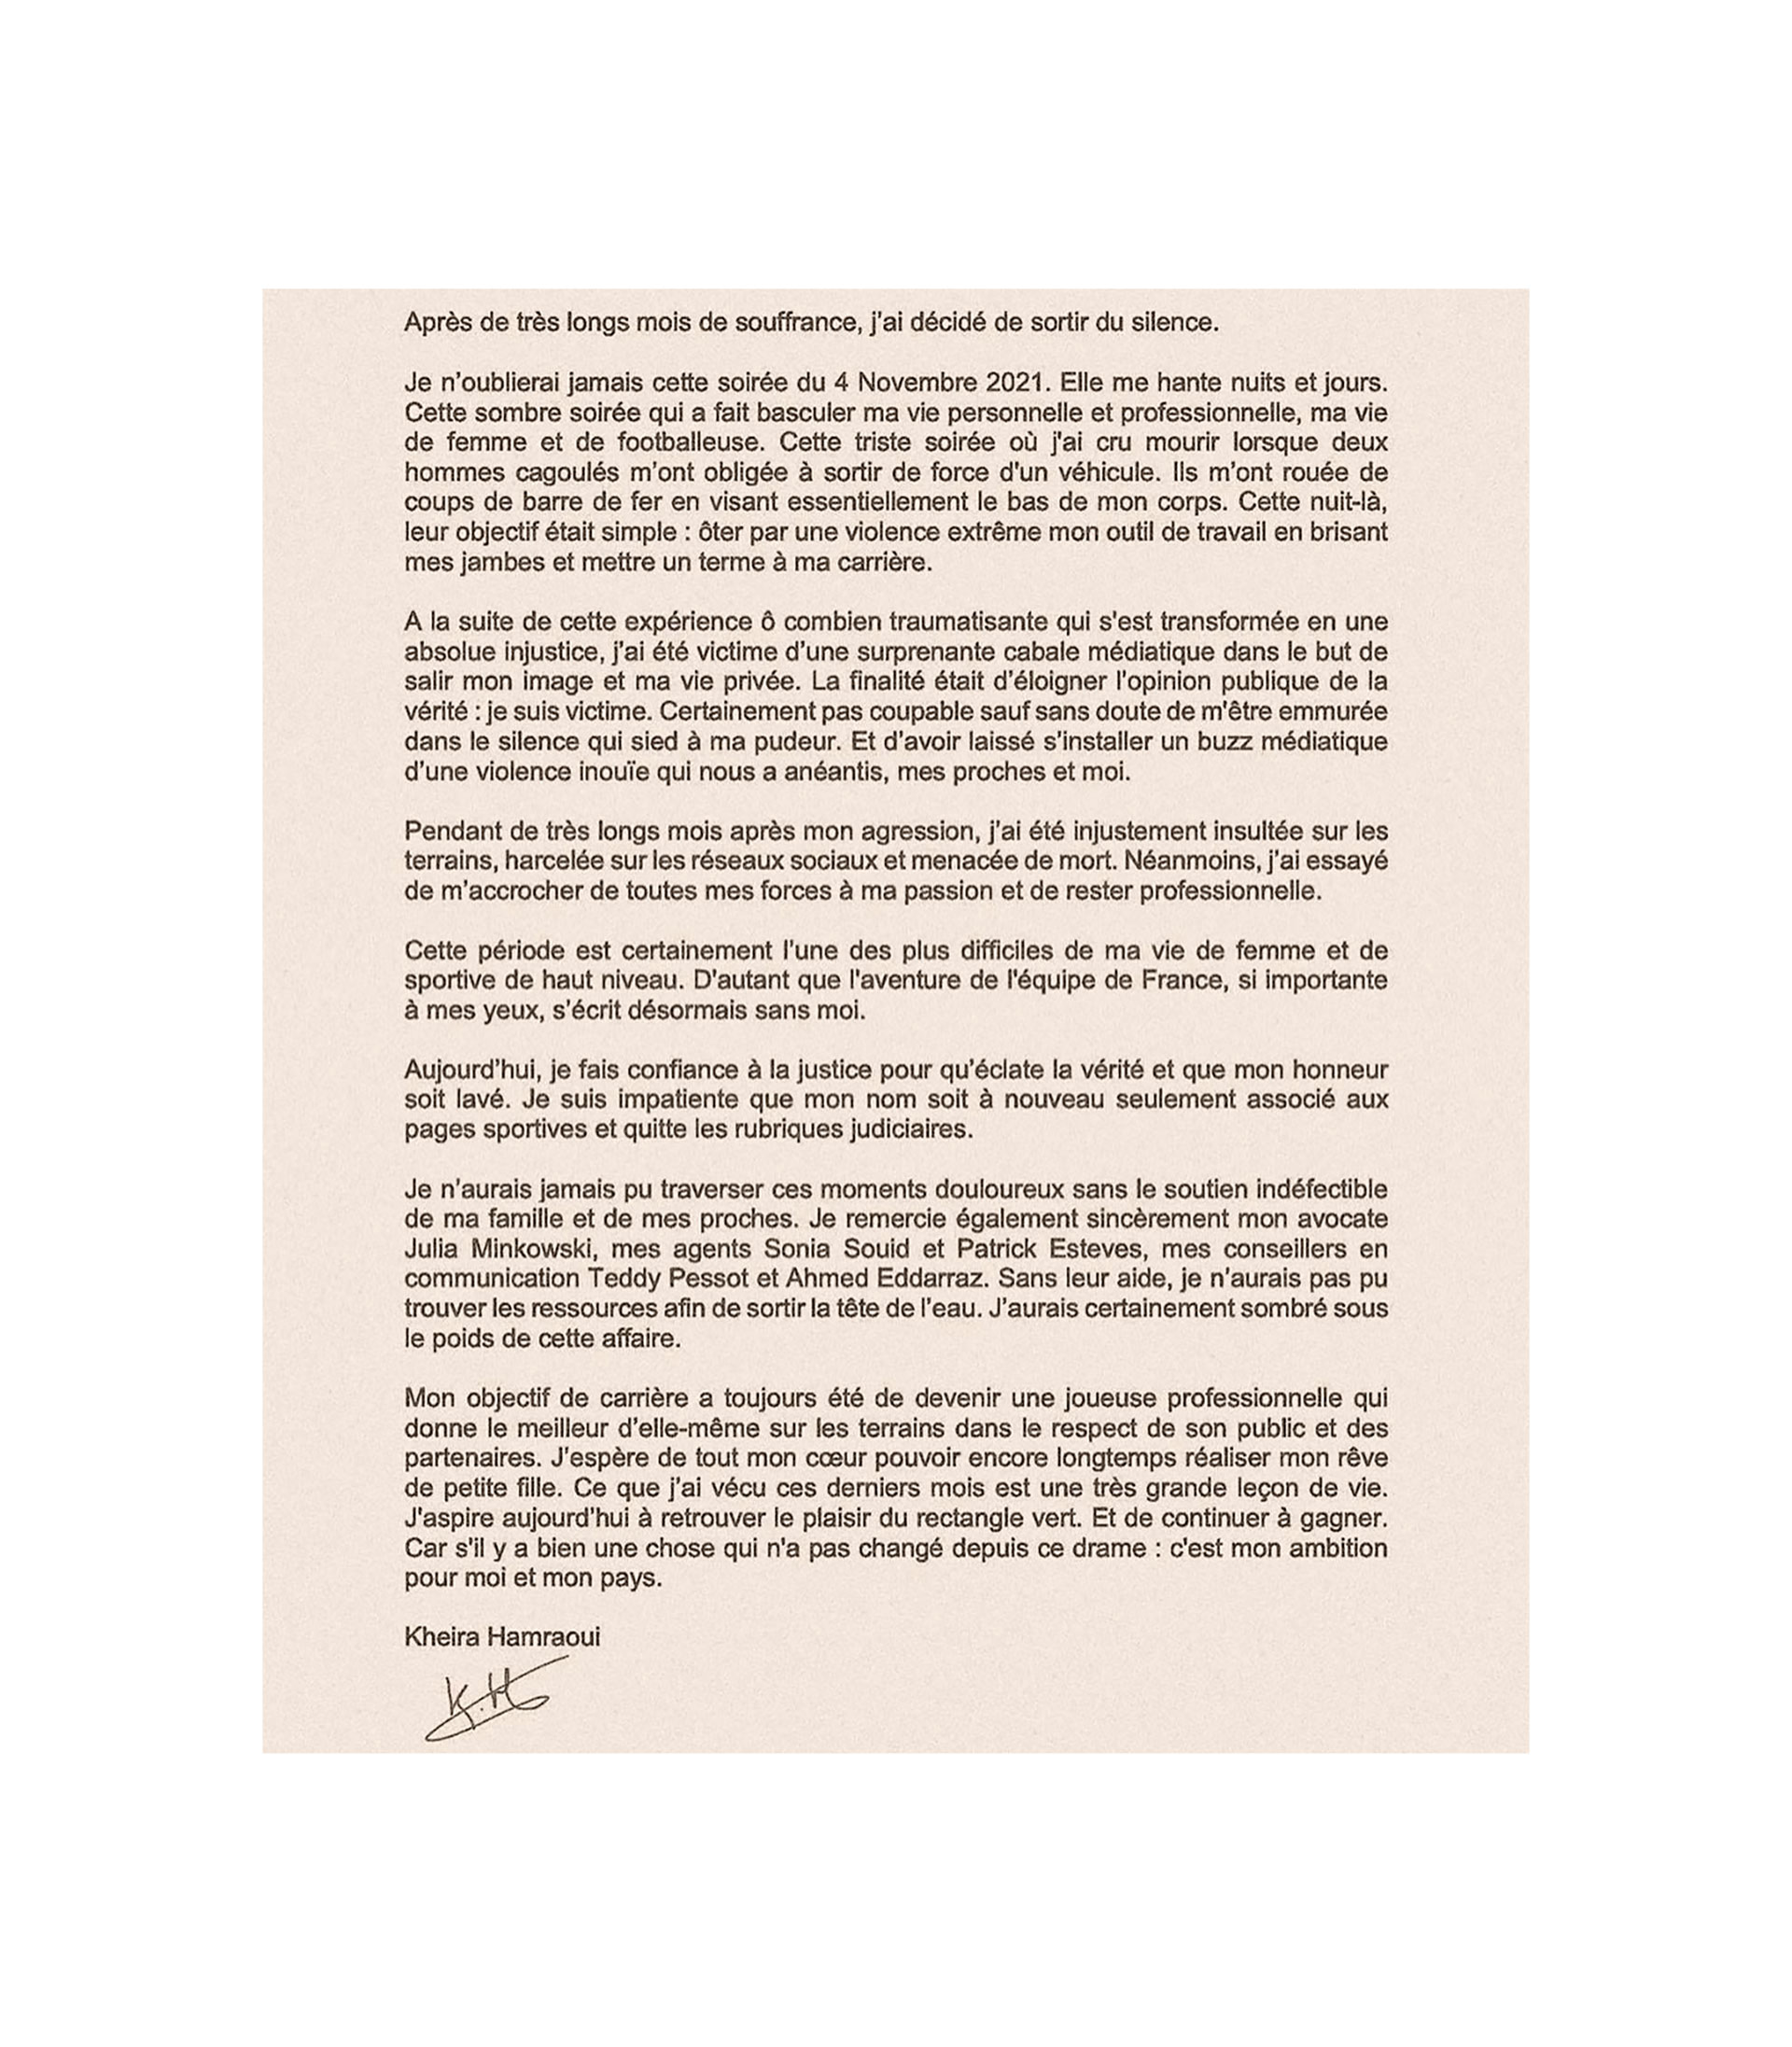 La carta que publicó Kheira Hamraoui tras conocerse la imputación de Aminata Diallo. 